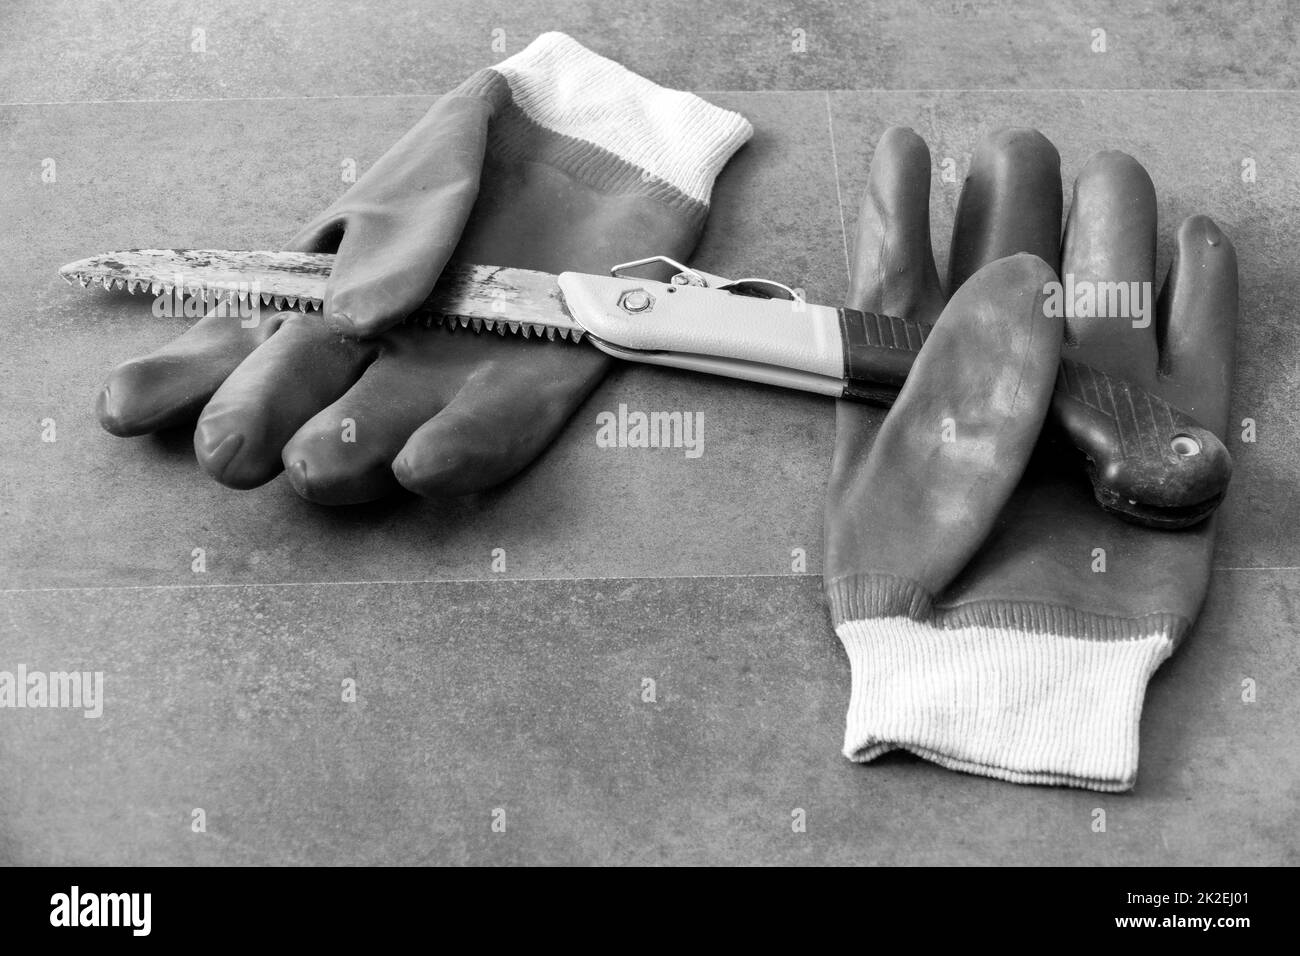 utilizzo di guanti per evitare lesioni alle mani durante il lavoro in officina-sega e guanti da lavoro spessi- Foto Stock